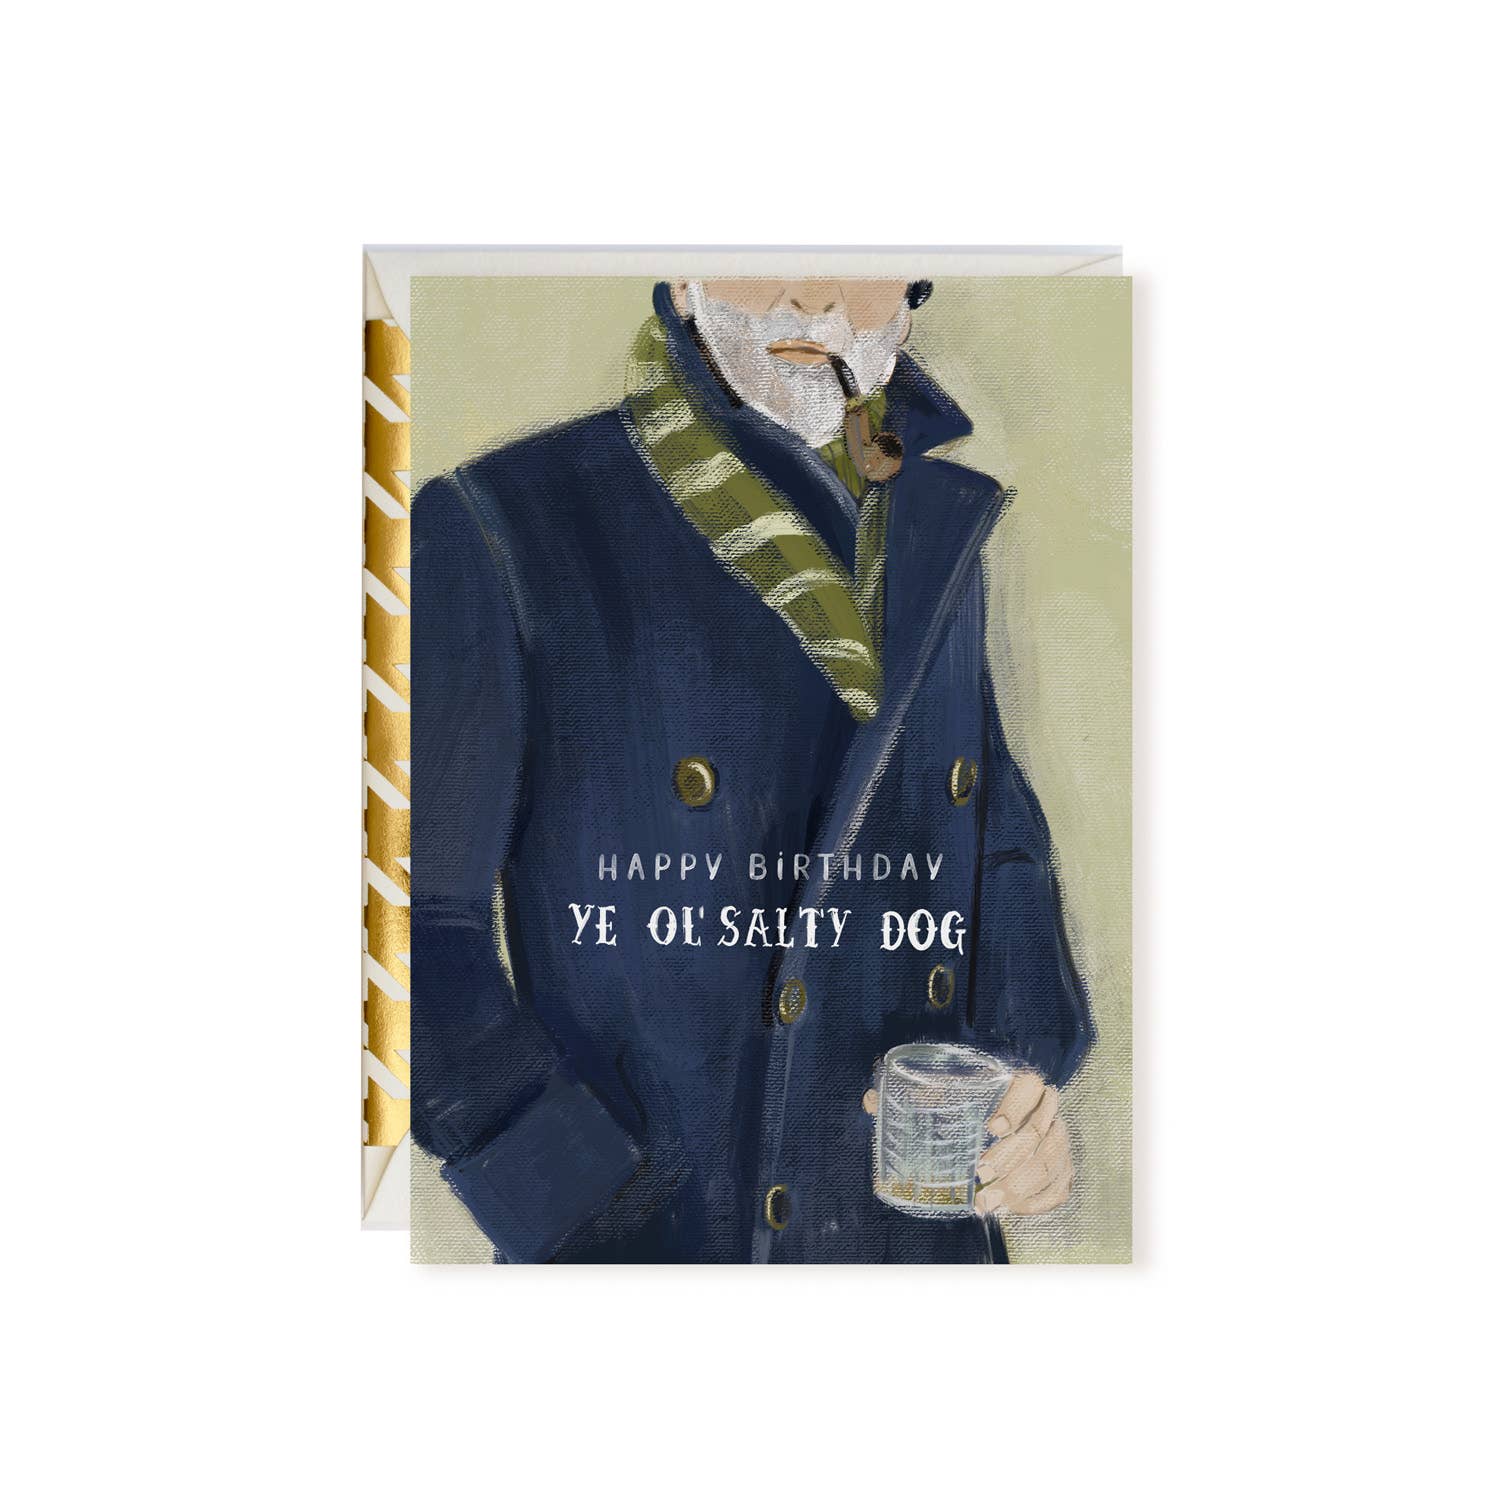 Happy Birthday Ye Ol' Salty Dog Greeting Card - Abigail Fox Designs